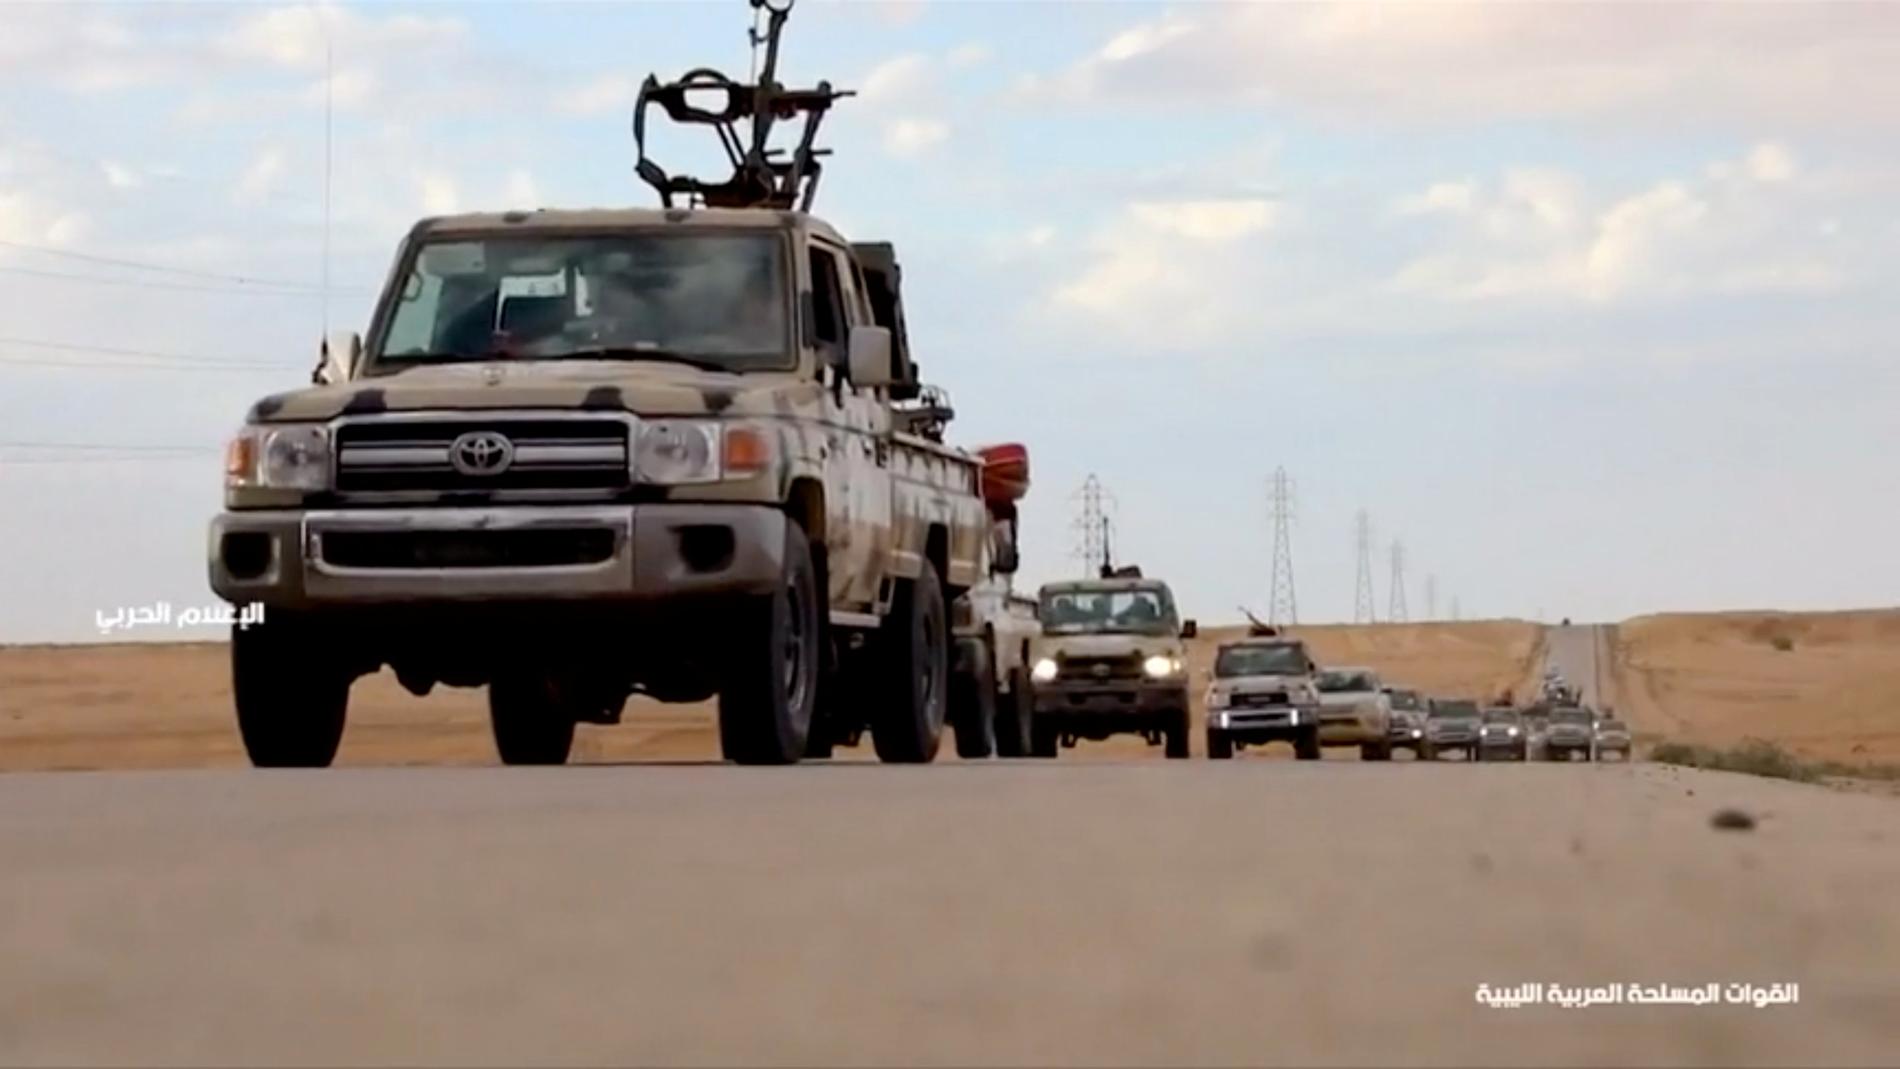 En fordonskolonn med vapen på en väg i Libyen. Bilden är från en tv-sändning.